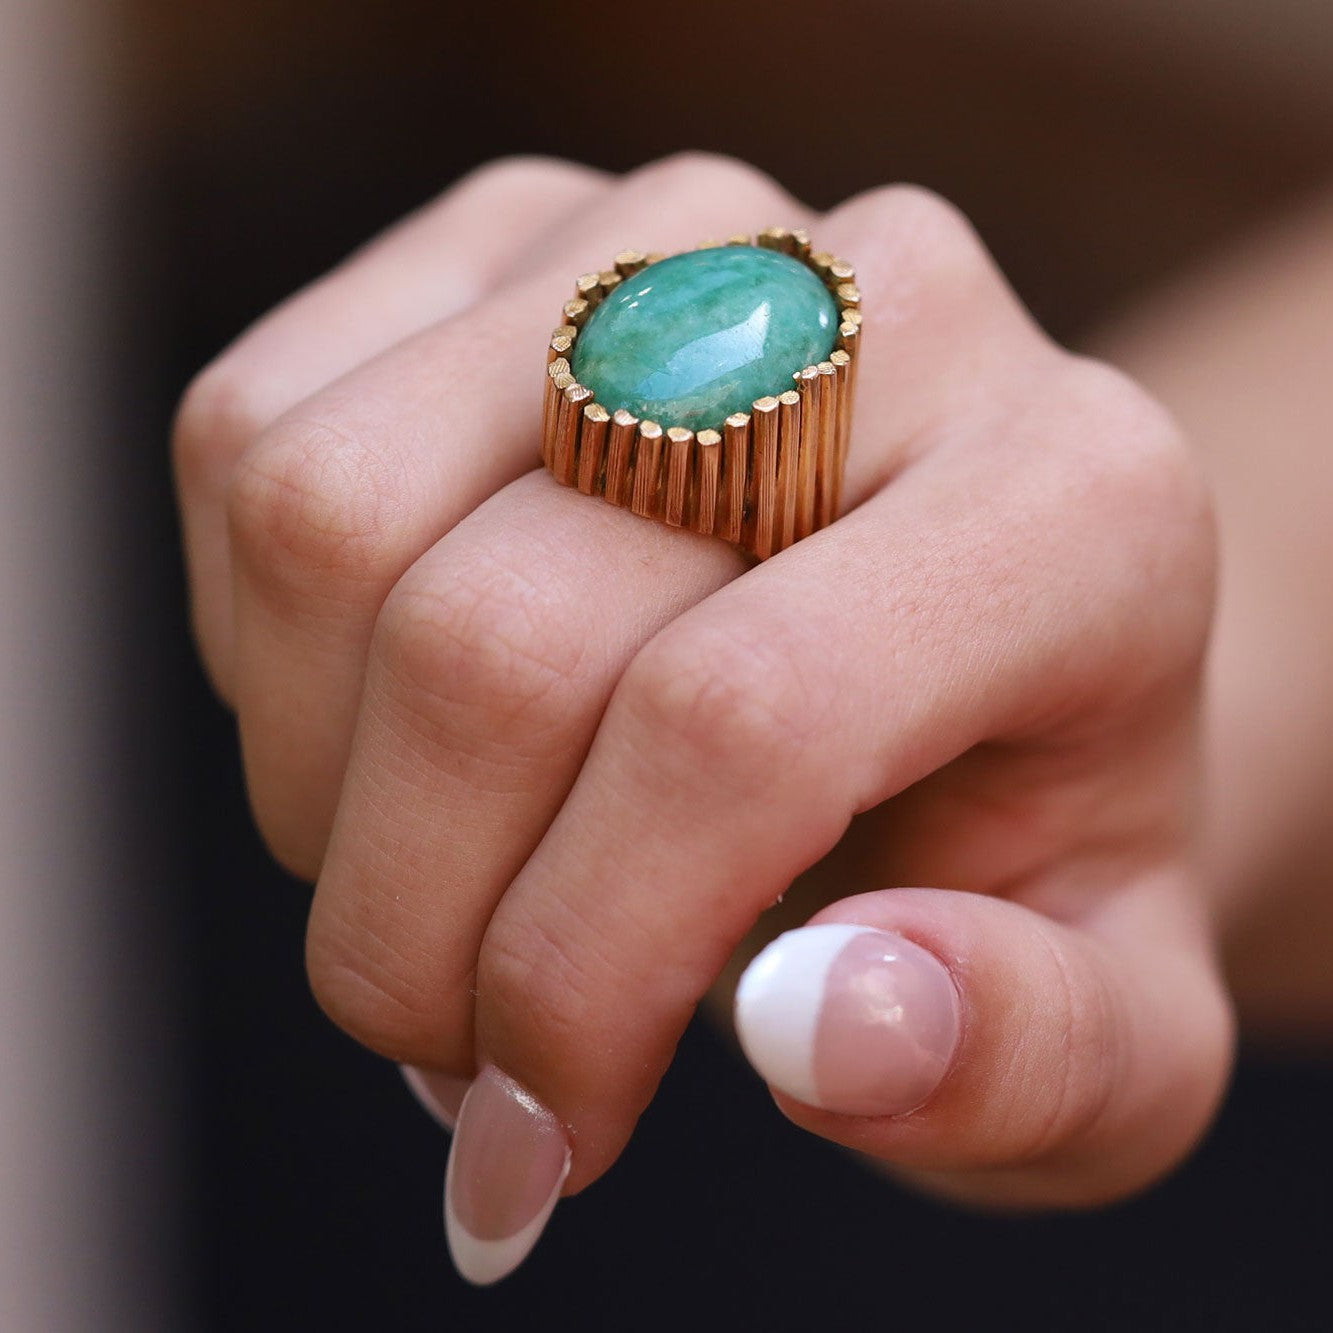 Vintage 1960s 15 Carat Jadeite Modernist Cocktail Ring